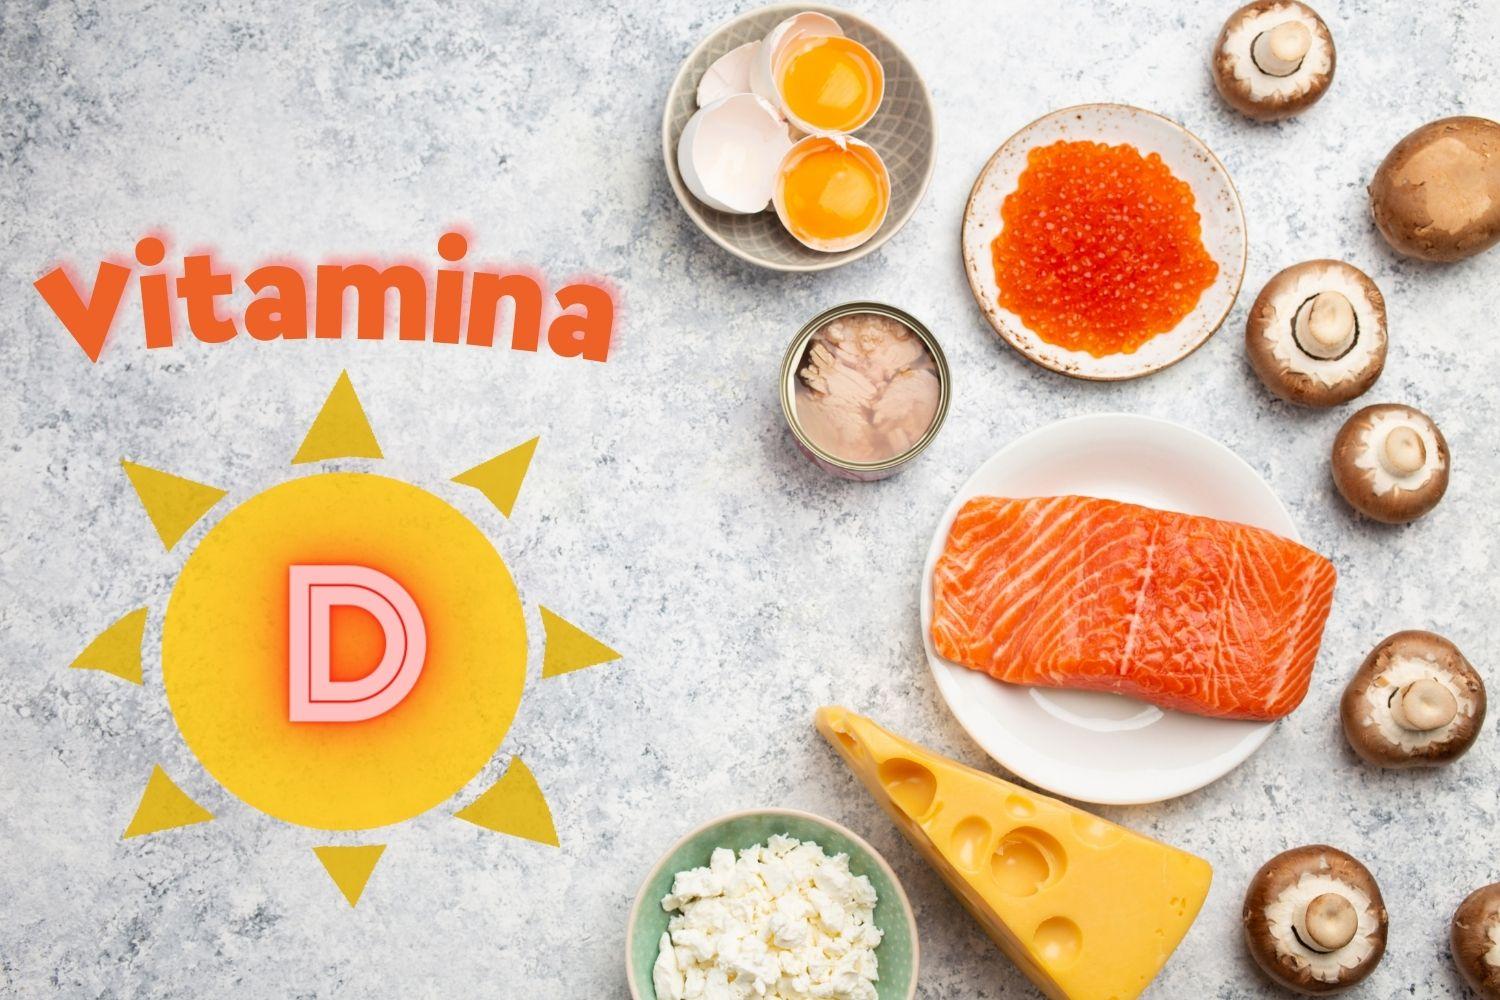 Vitamina D pode trazer benefícios e malefícios para a saúde